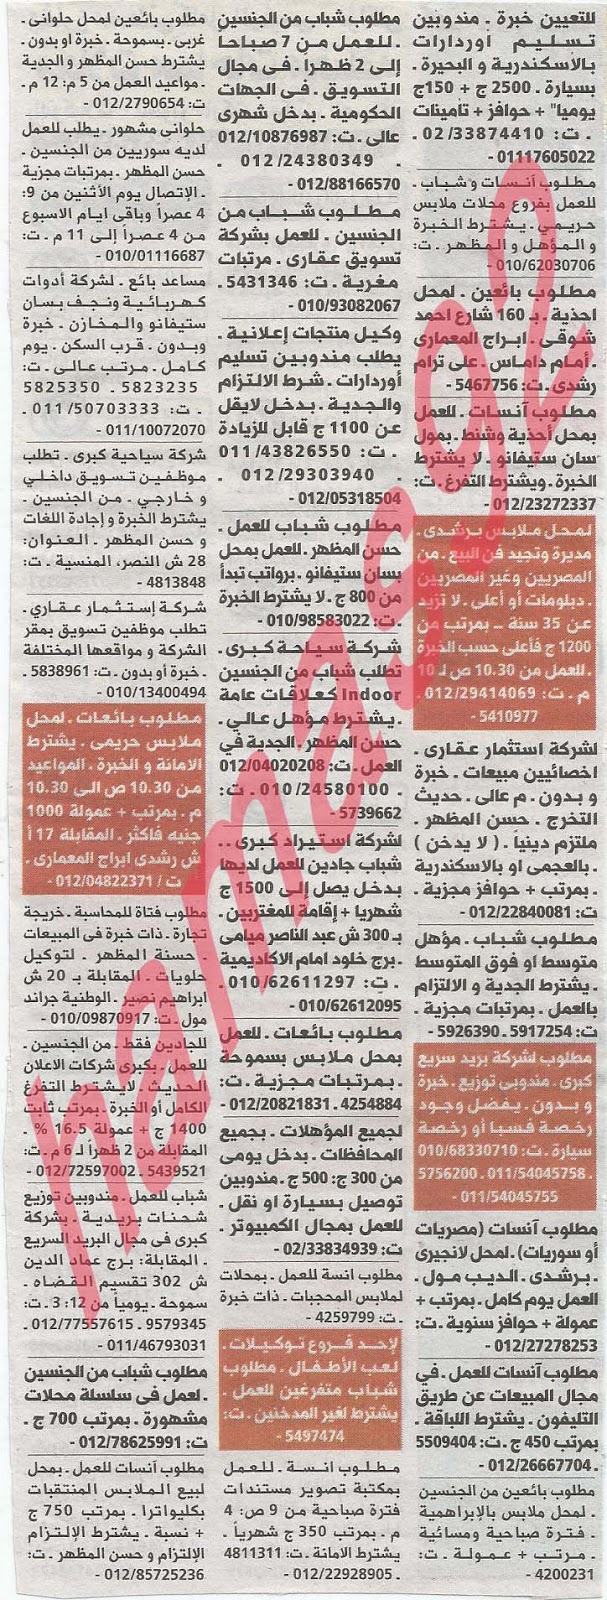 وظائف خالية فى جريدة الوسيط الاسكندرية الثلاثاء 14-05-2013 %D9%88+%D8%B3+%D8%B3+7